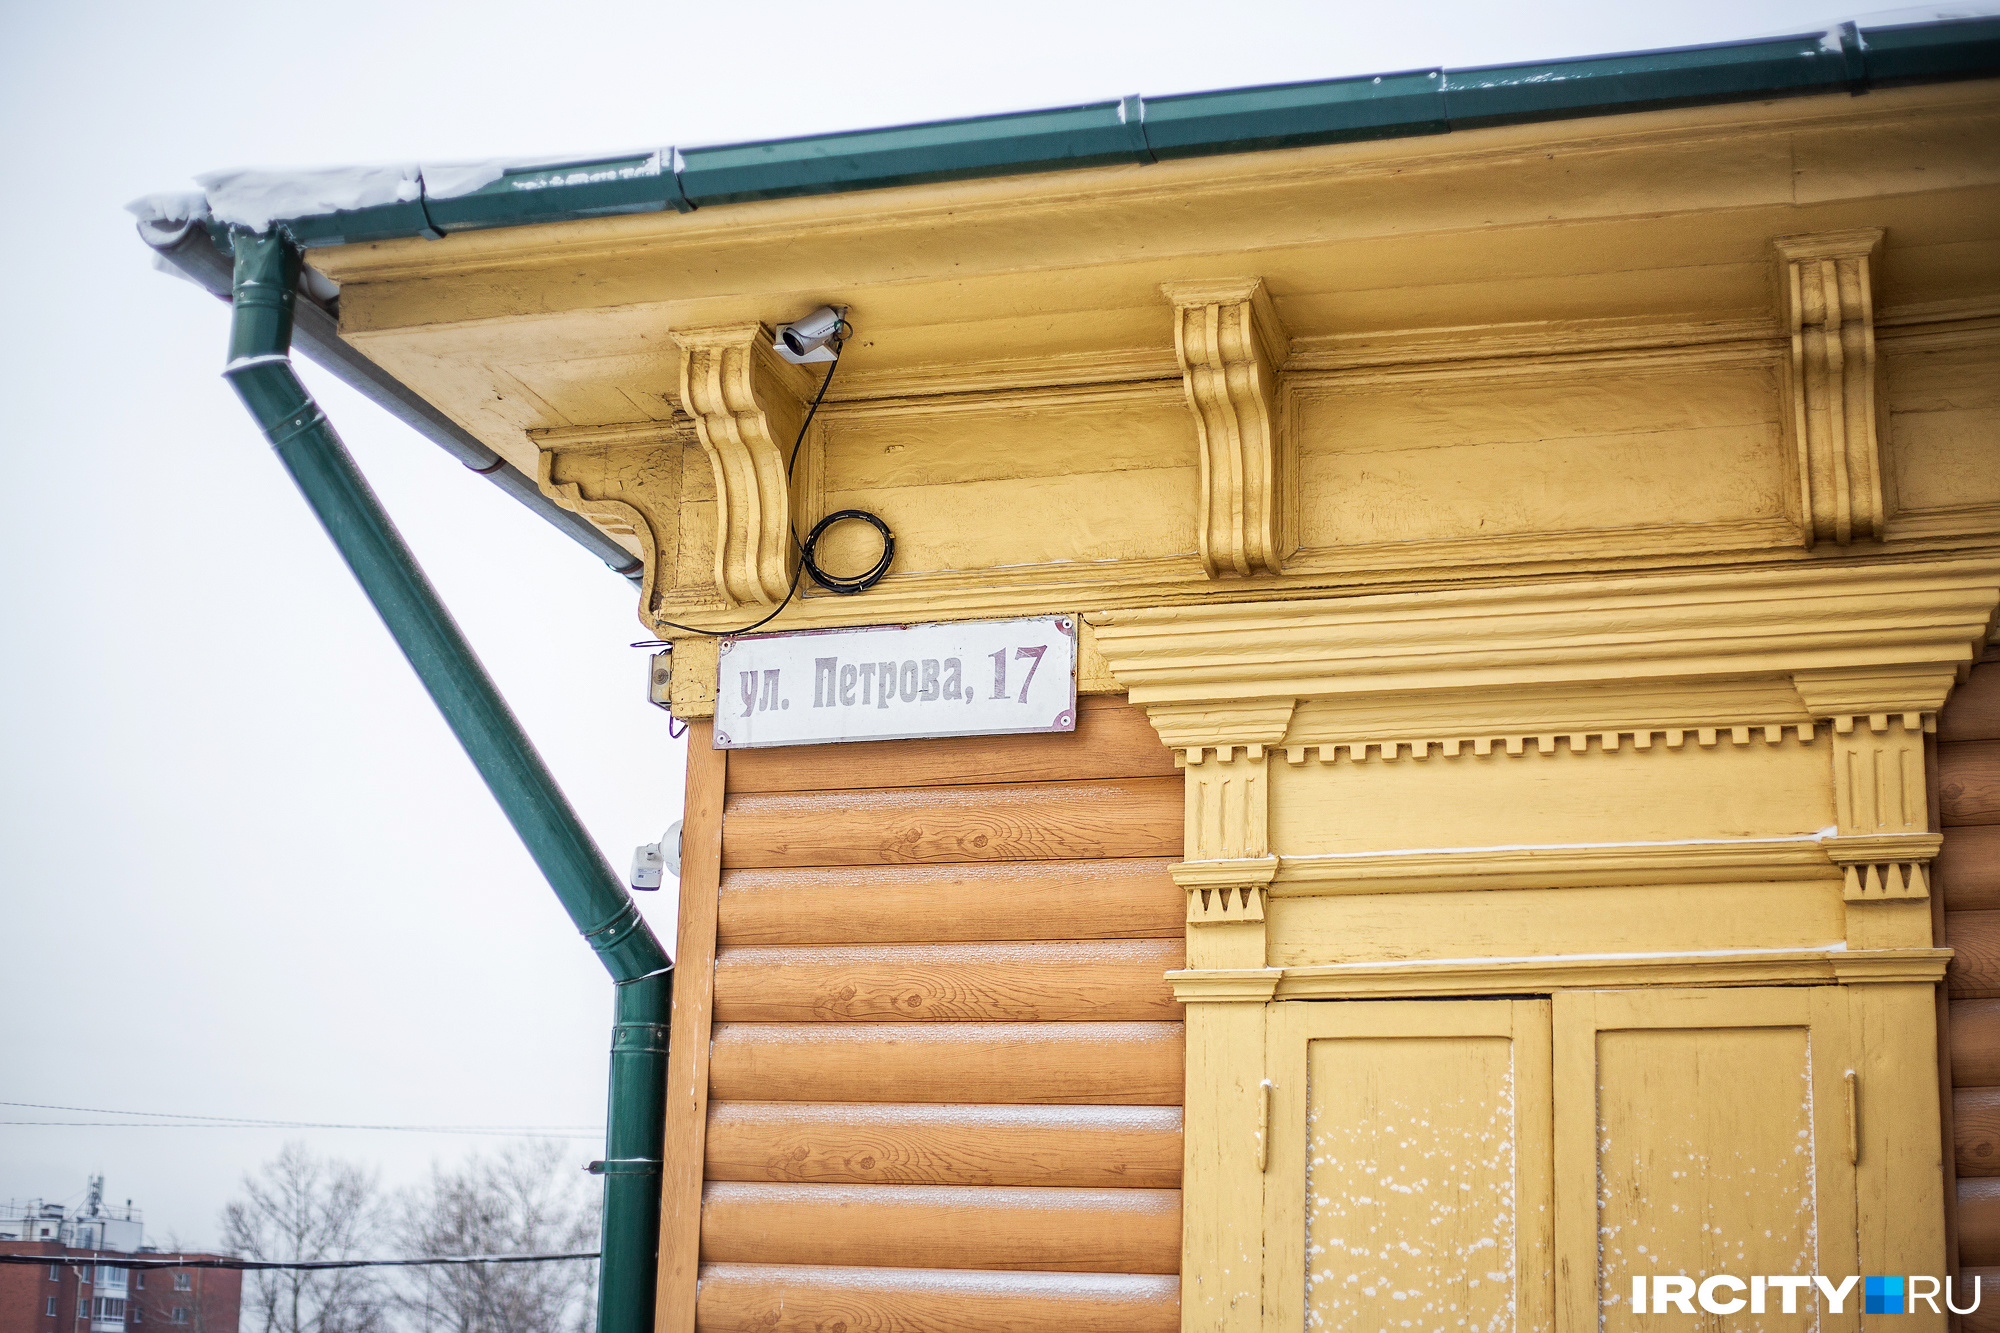 Улица Петрова в дореволюционные годы называлась Брянской, а этот дом был тринадцатым по счету